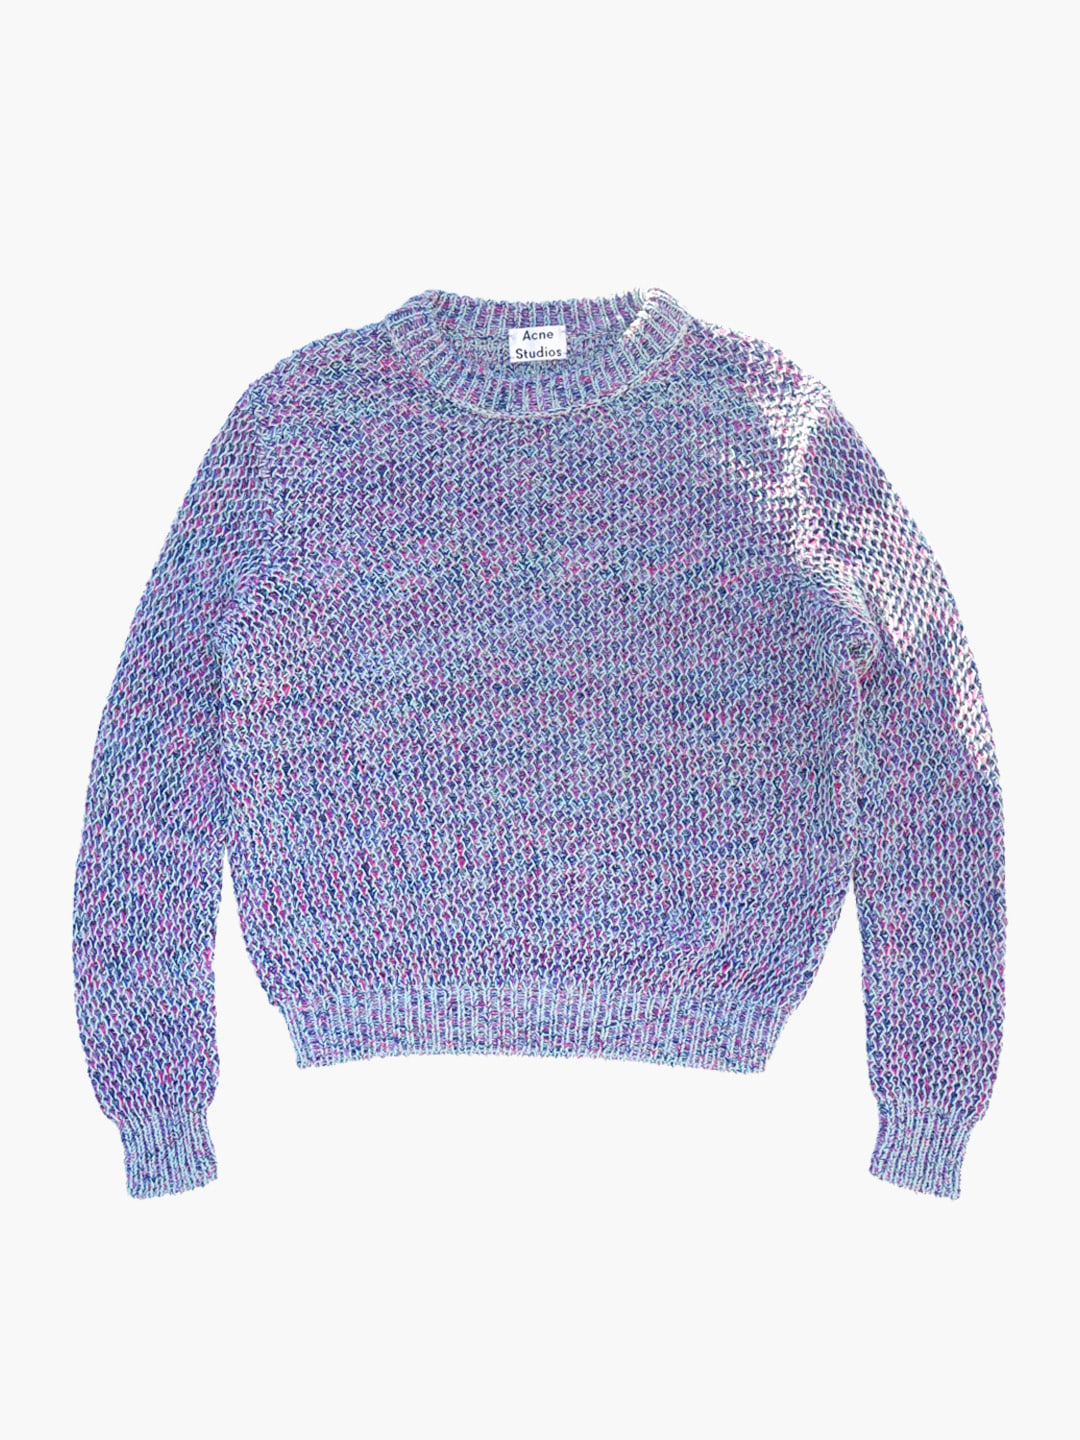 ACNE STUDIOSMix color sweater